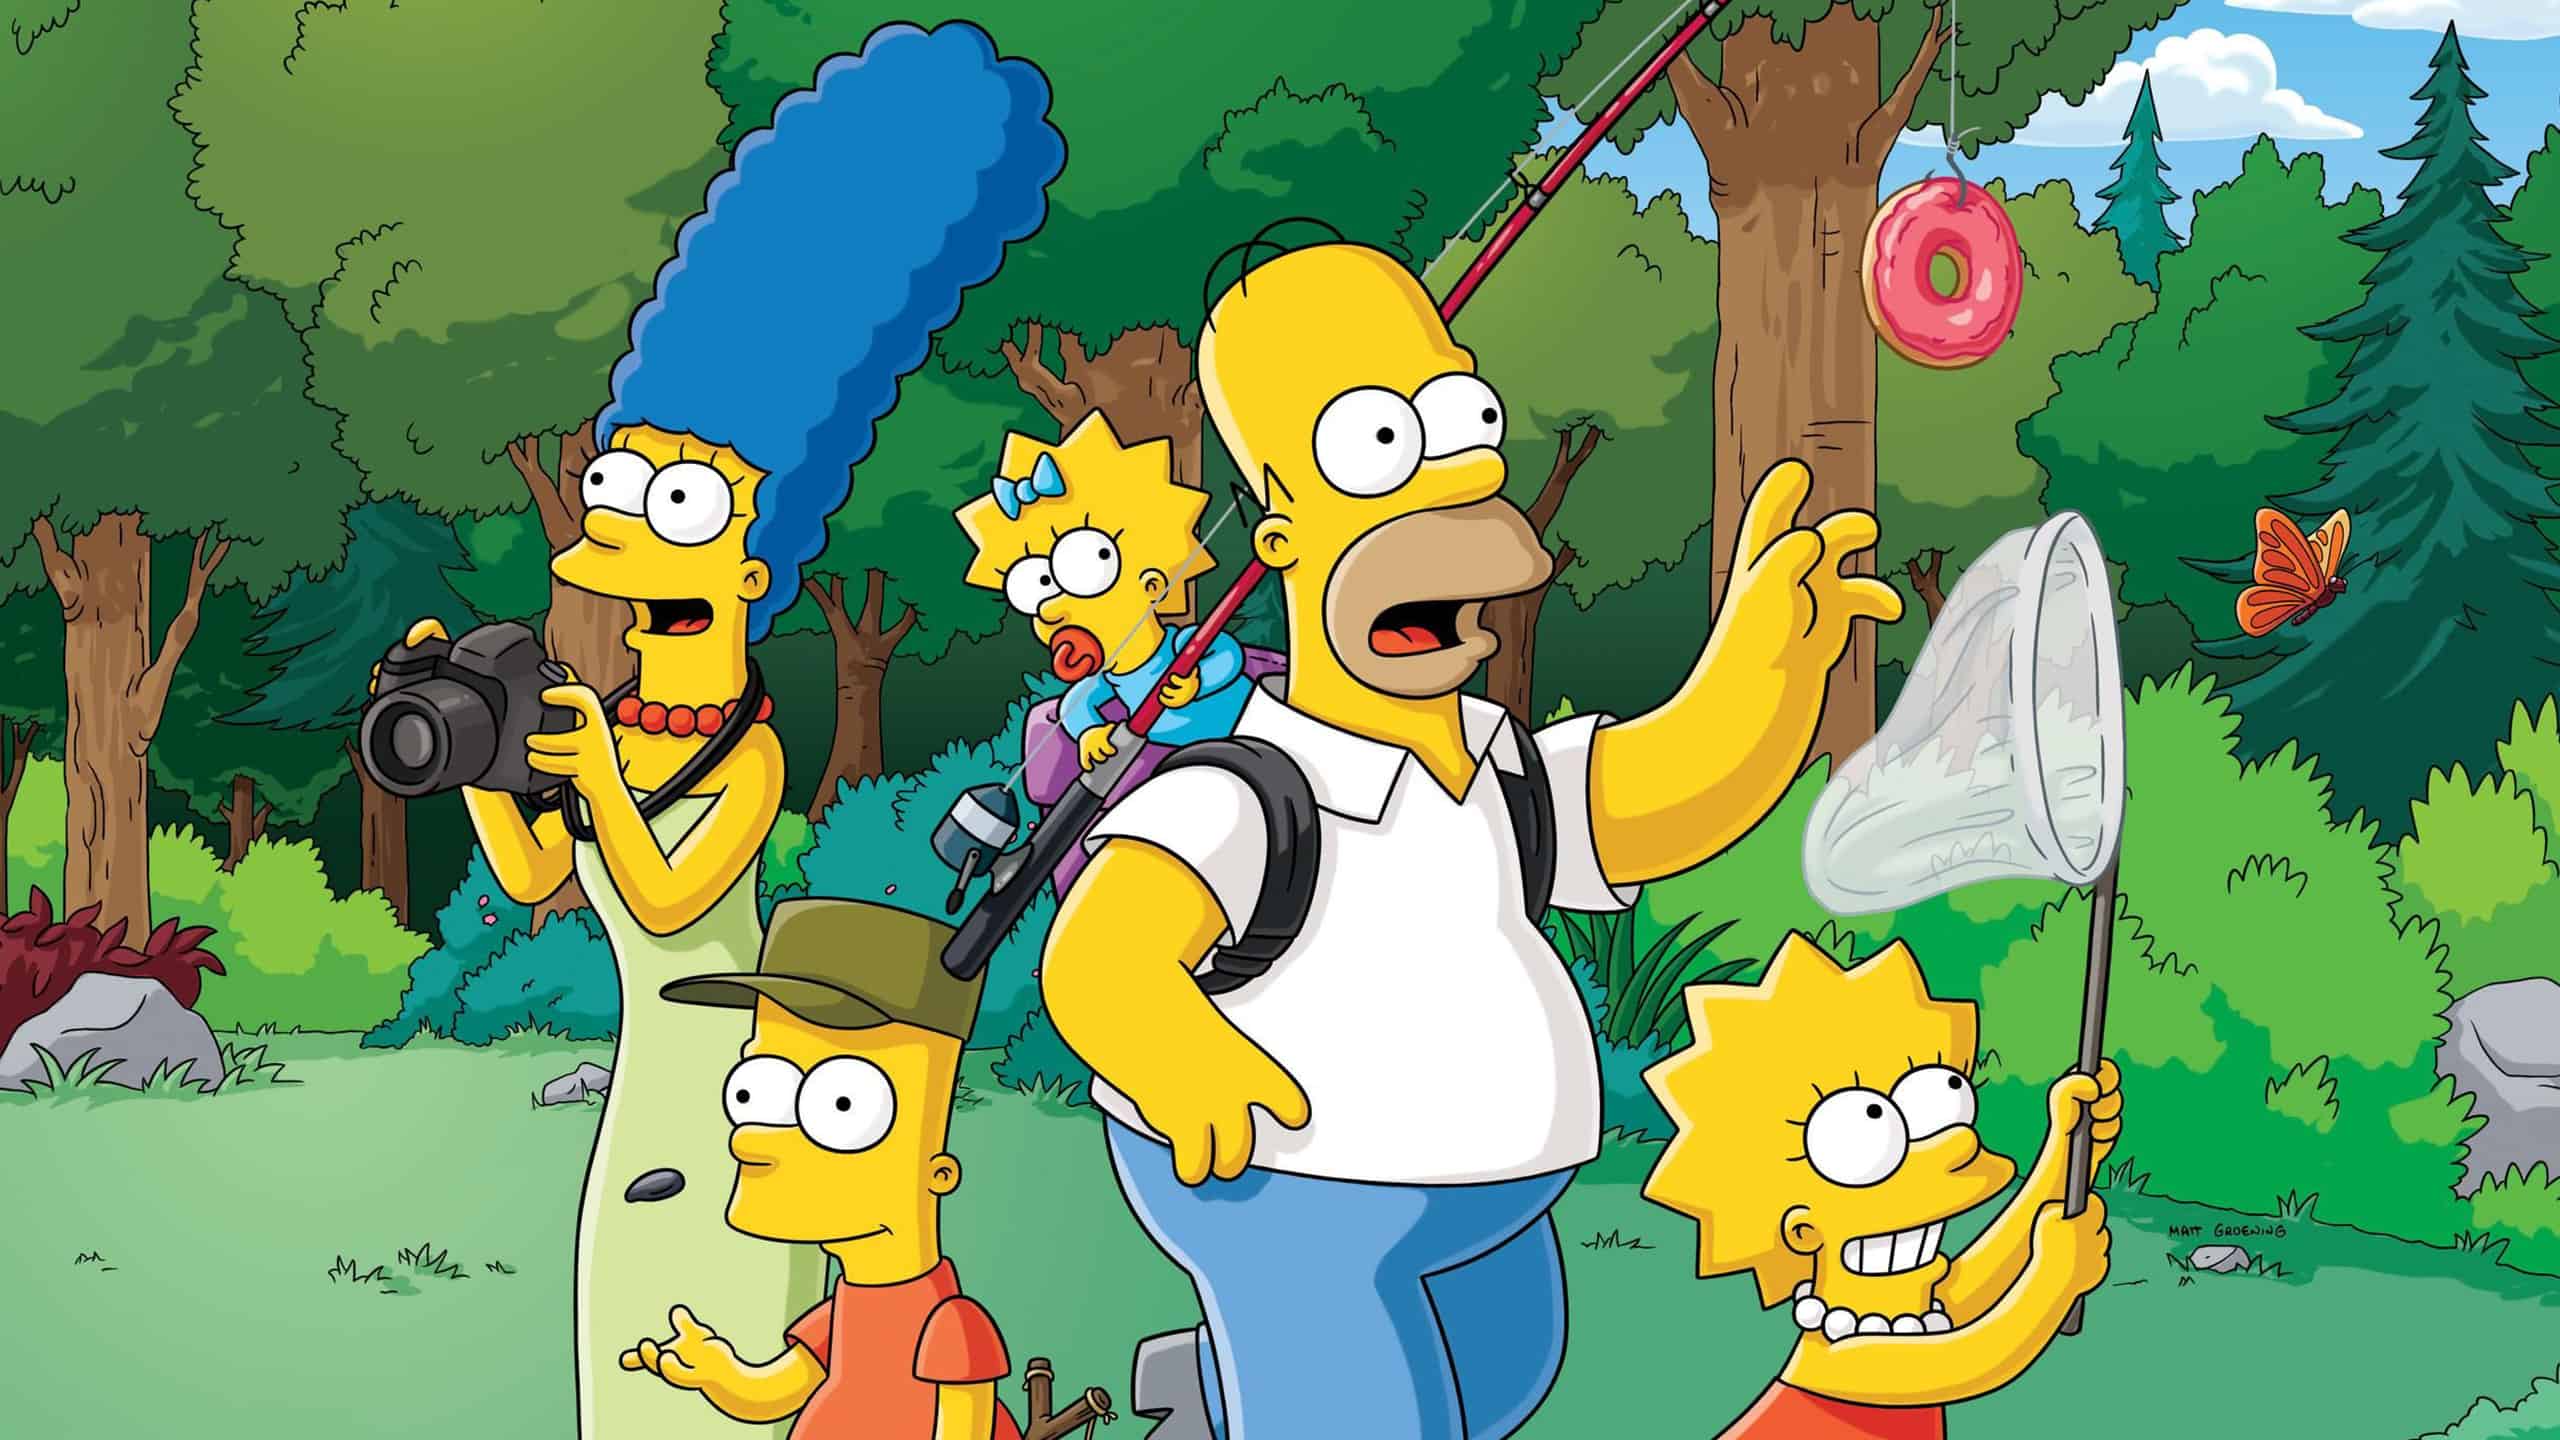 Les Simpson se baladent dans la nature en chassant le papillon pour Lisa, les images pour Marge ou bien le donut pour Homer.